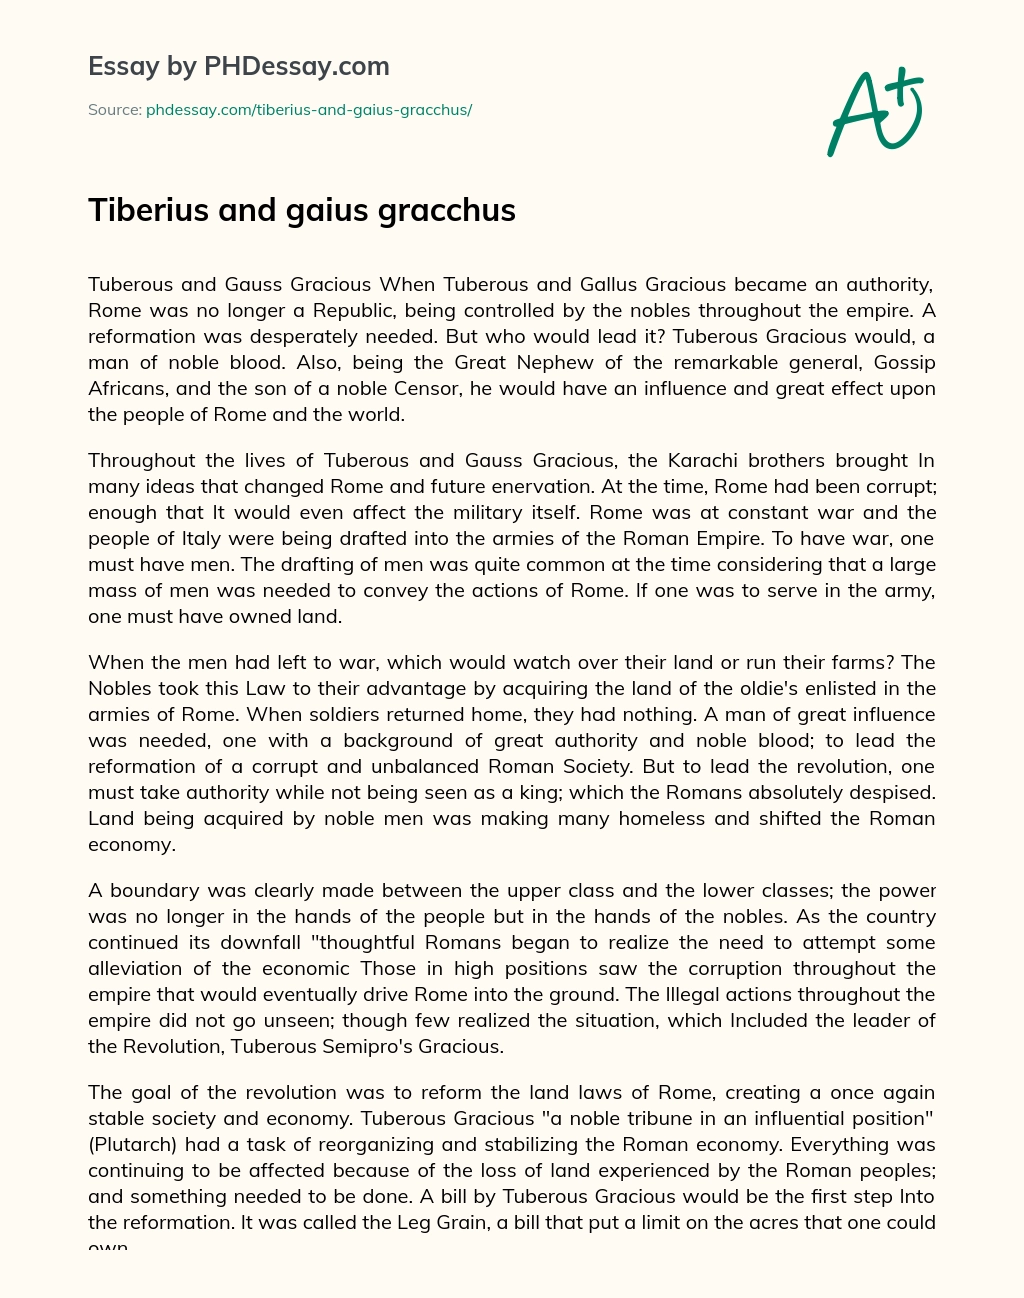 Tiberius and gaius gracchus essay